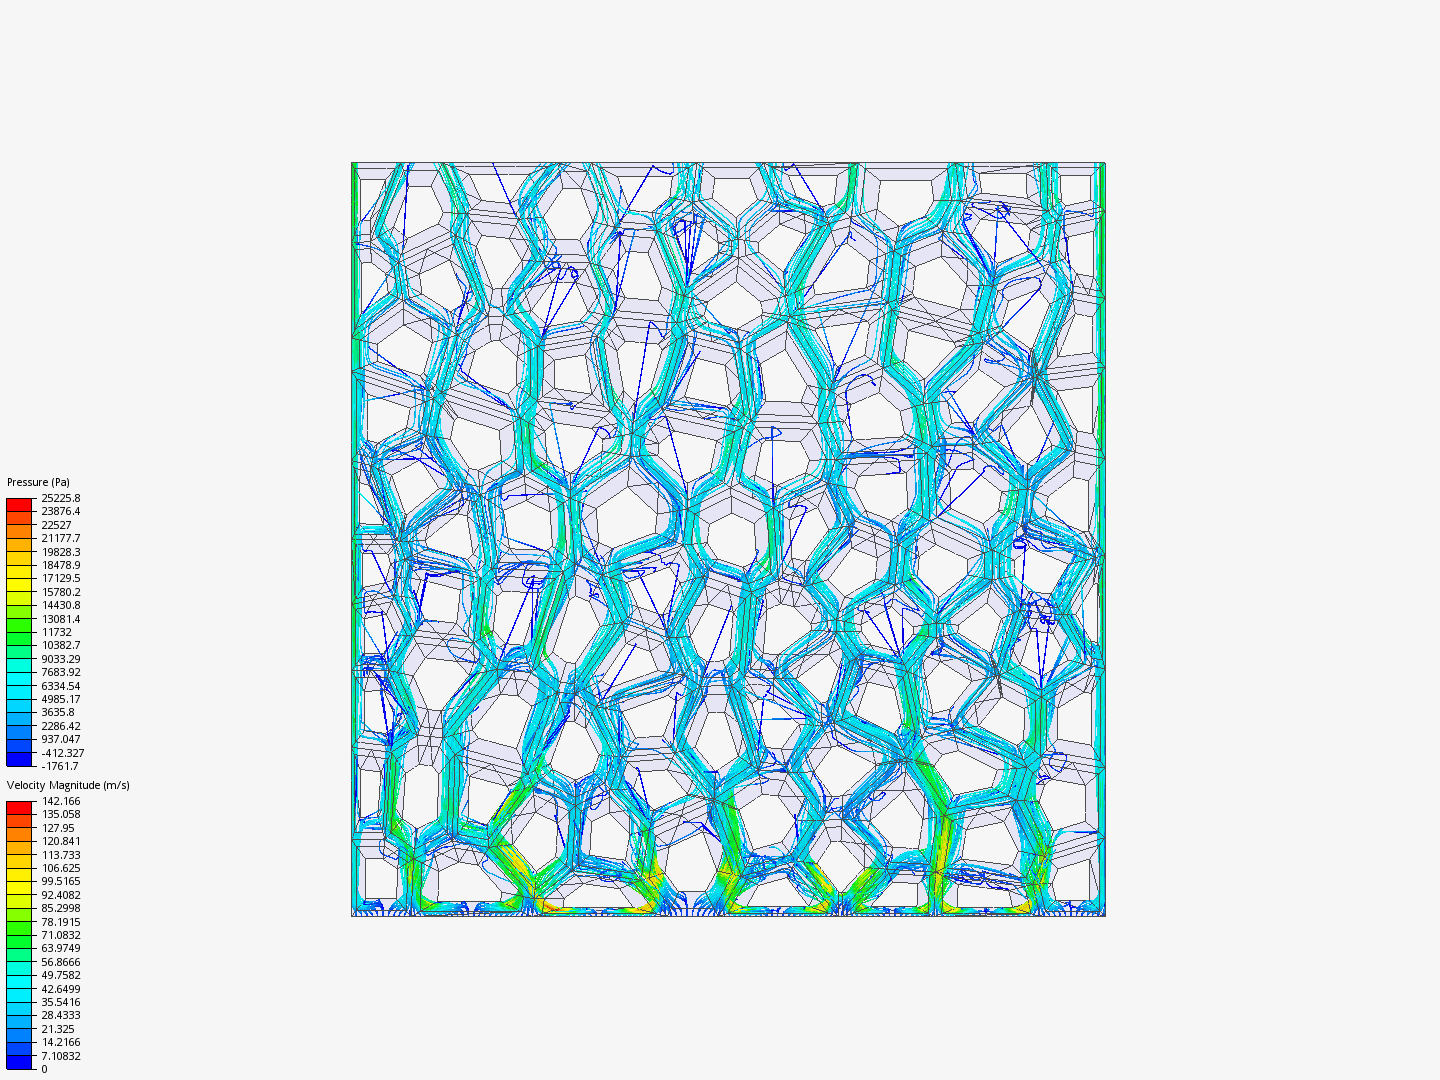 Voronoi image